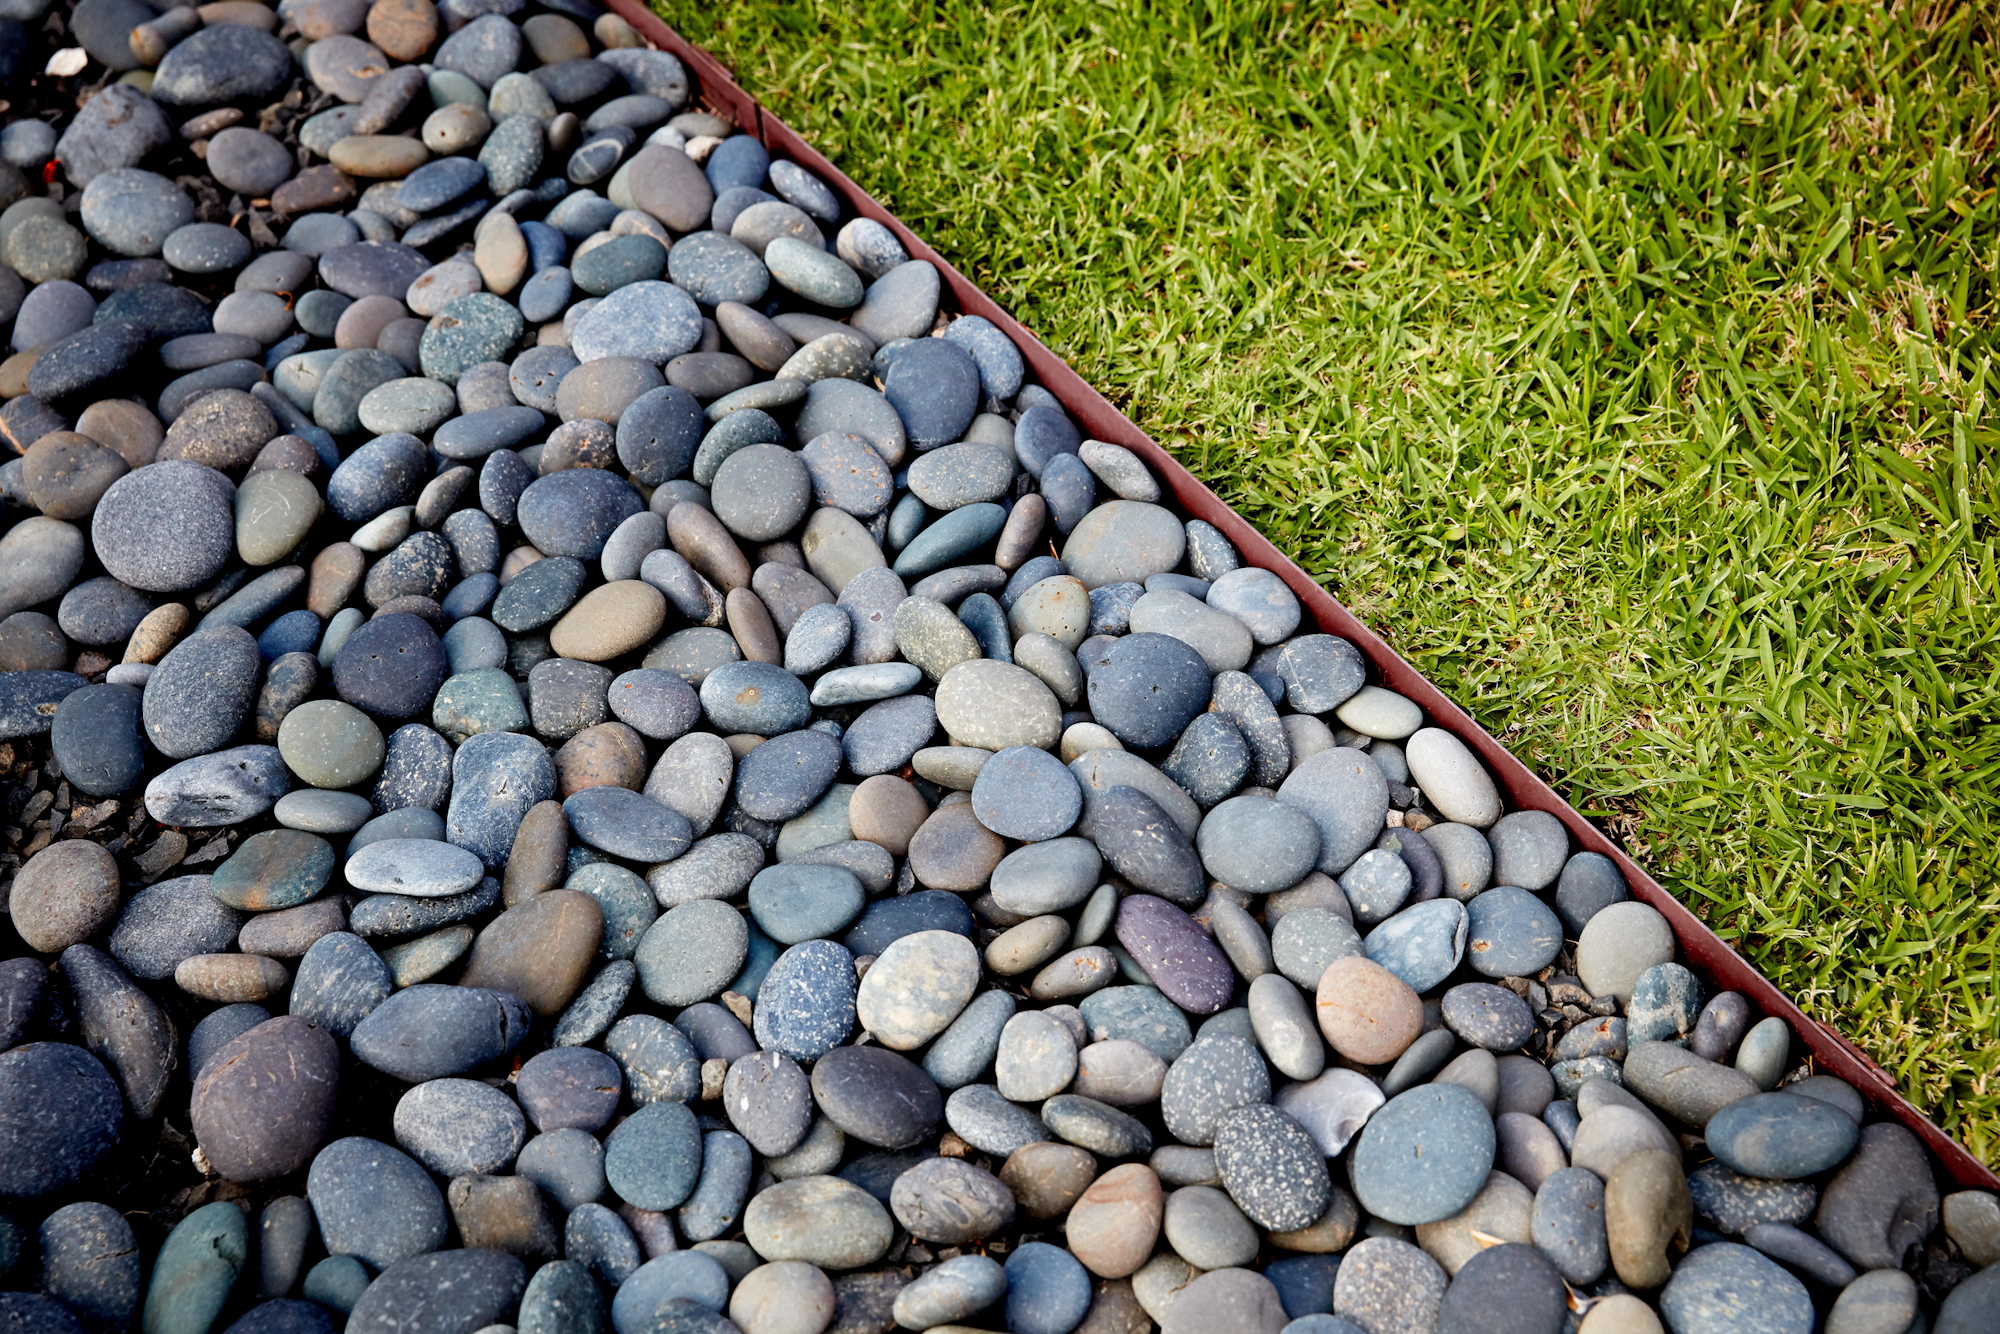 metal garden edging between lawn and pebbles